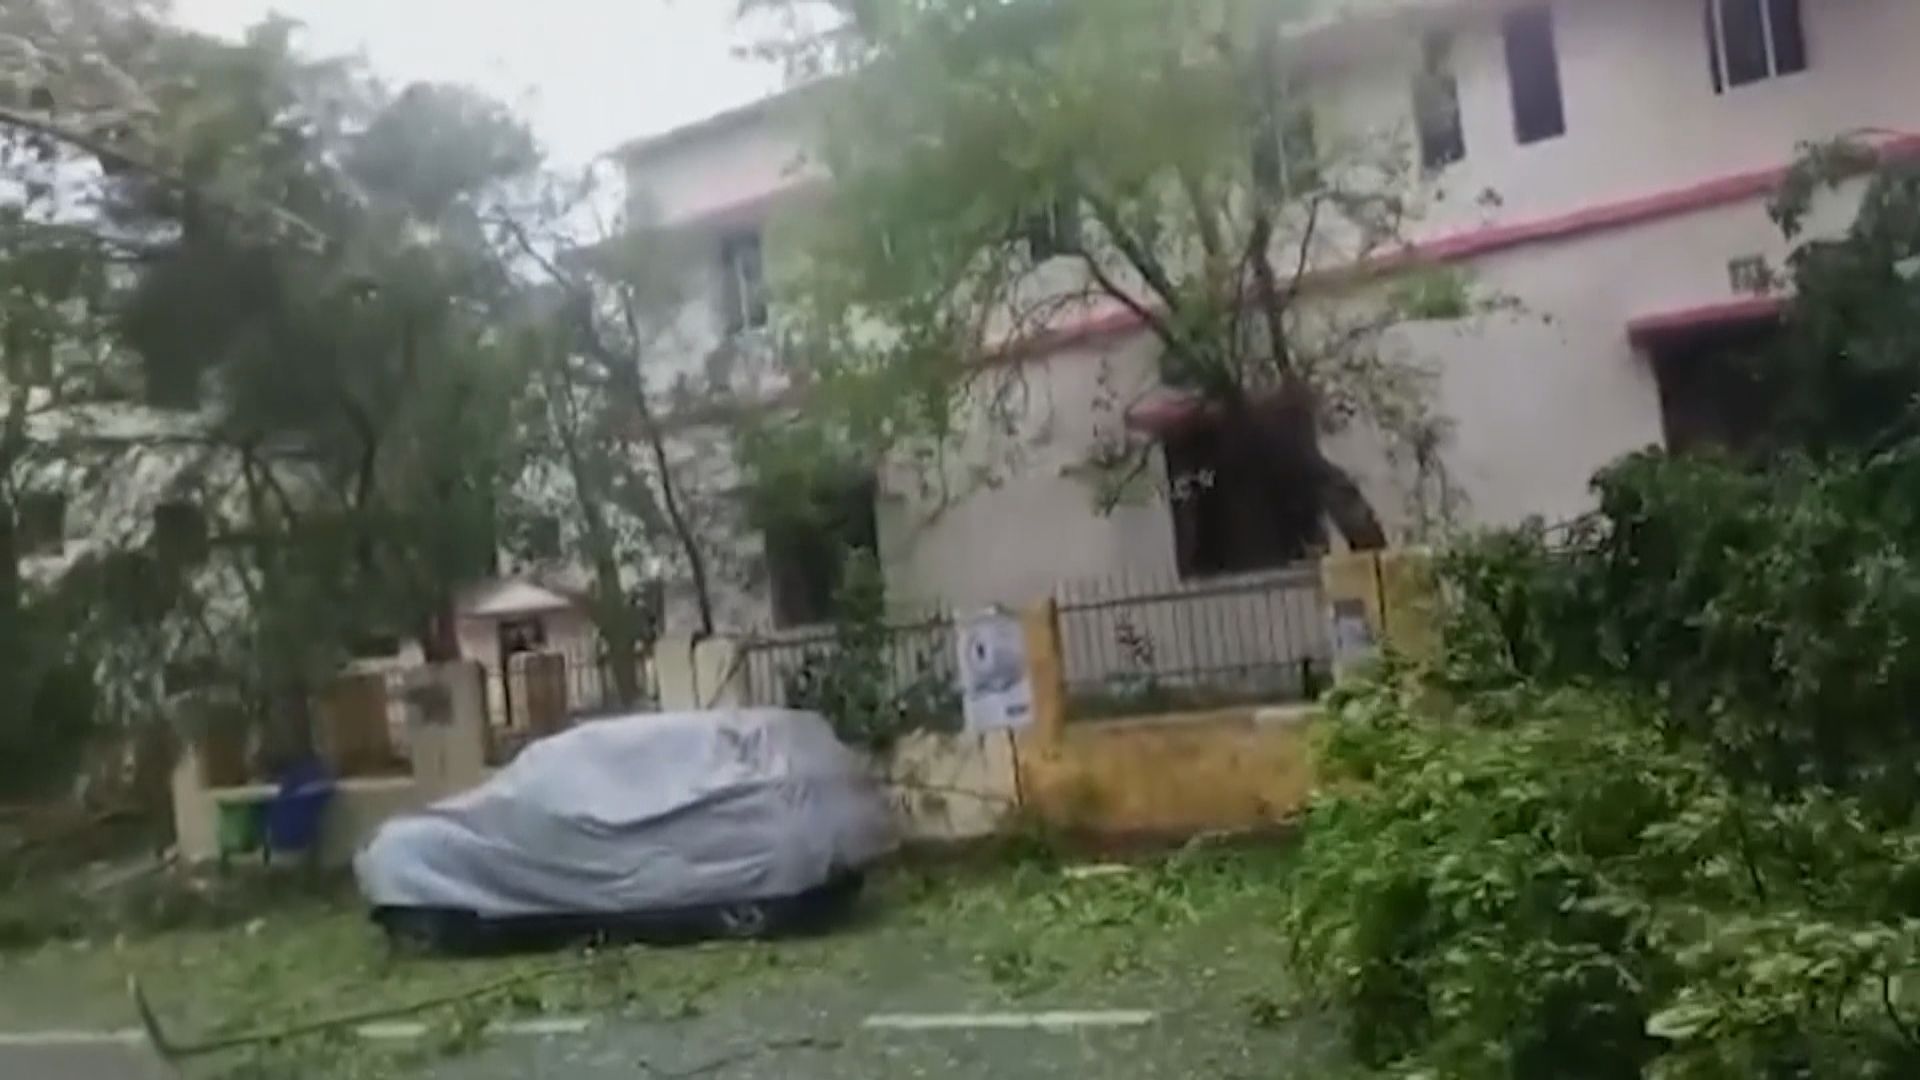 熱帶氣旋法尼吹襲印度三死逾百傷